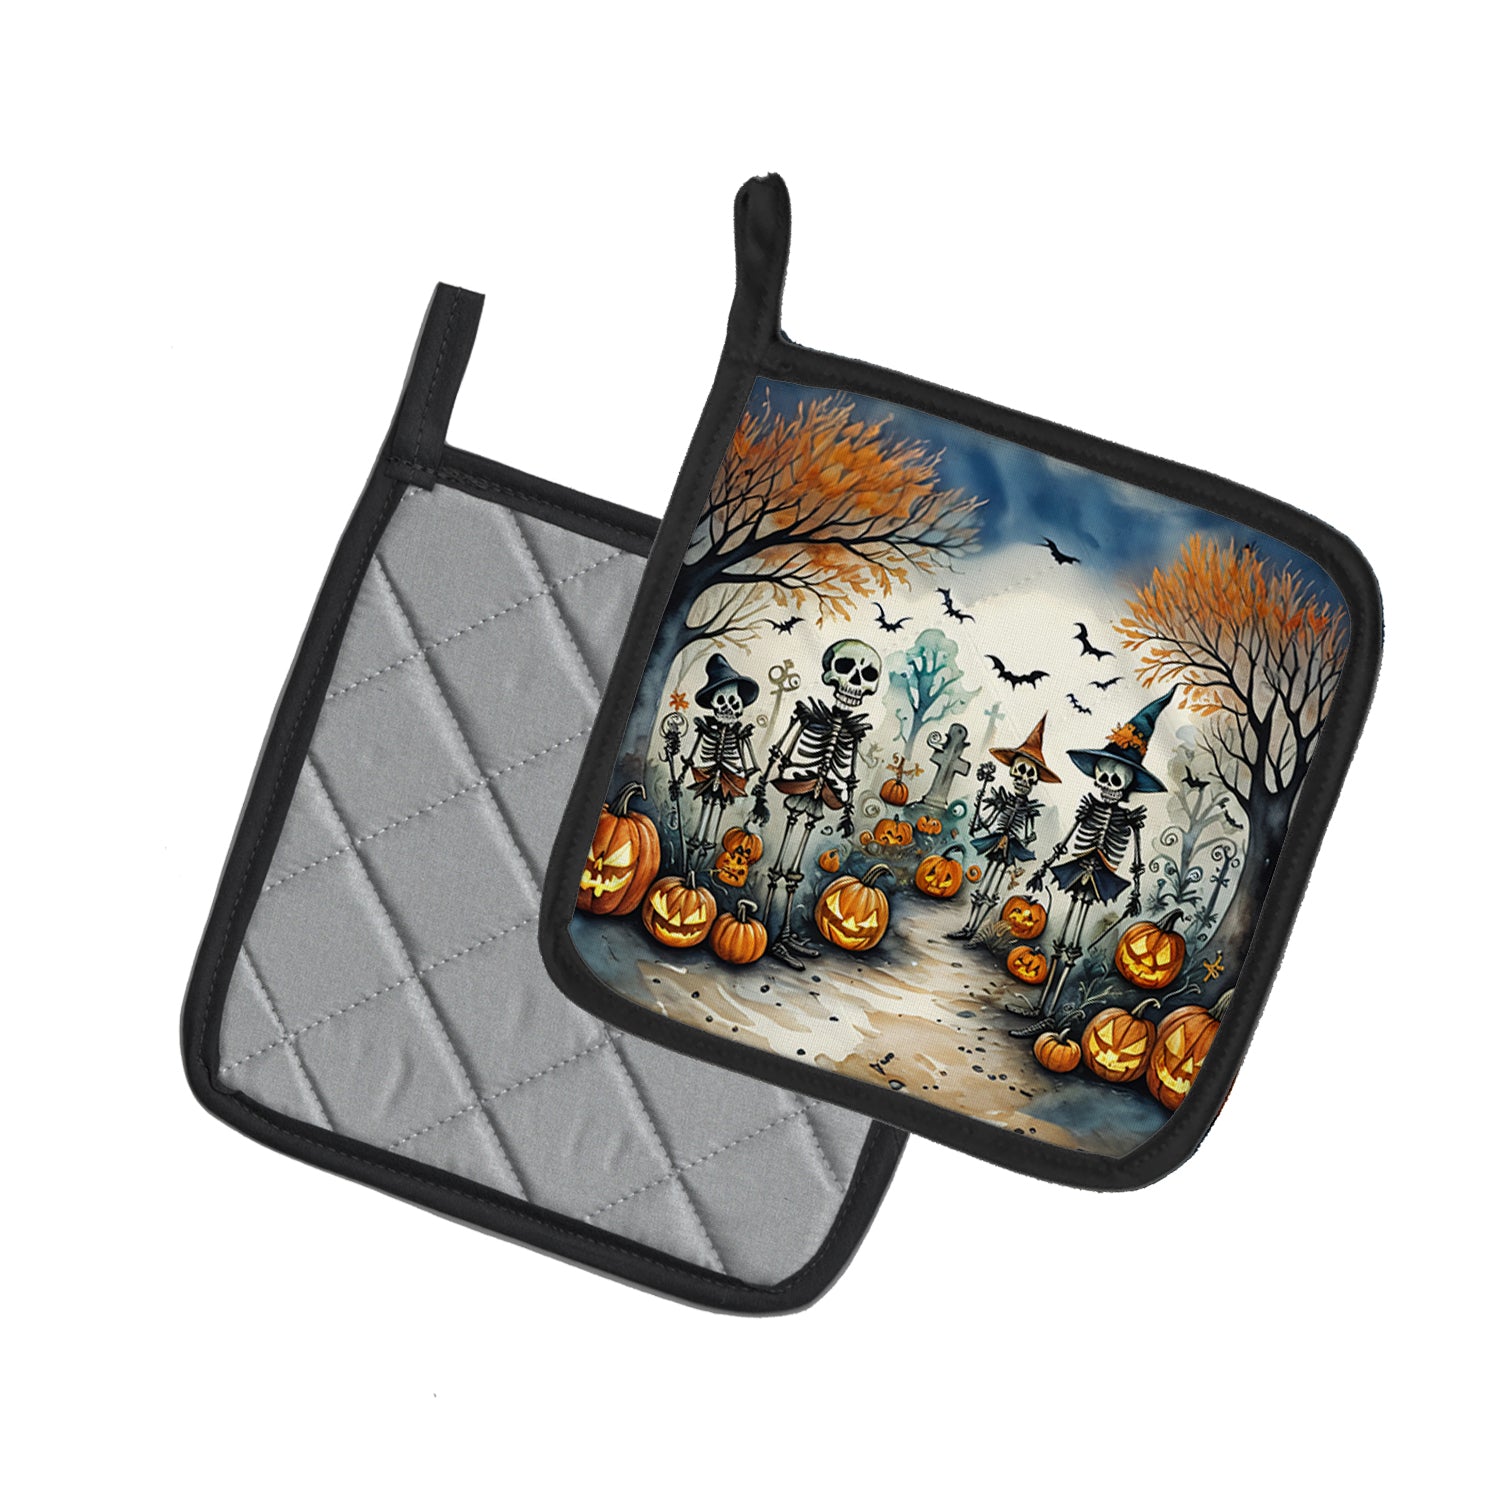 Buy this Calacas Skeletons Spooky Halloween Pair of Pot Holders